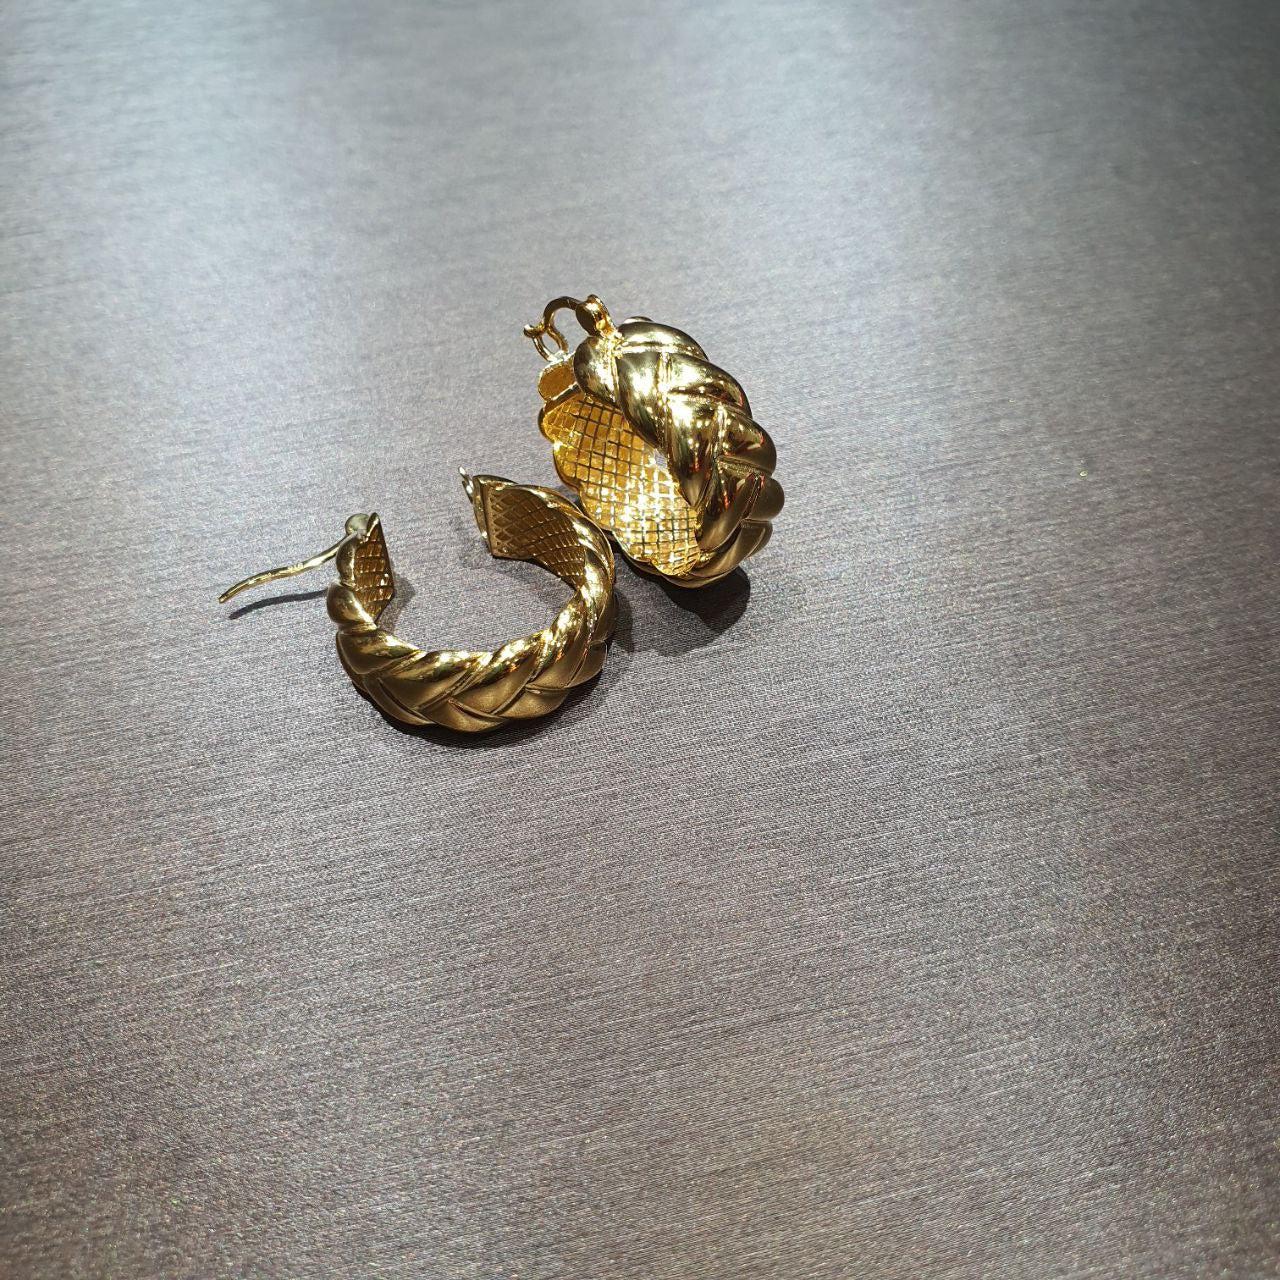 22k / 916 Gold Loop Earring High Polish-Earrings-Best Gold Shop